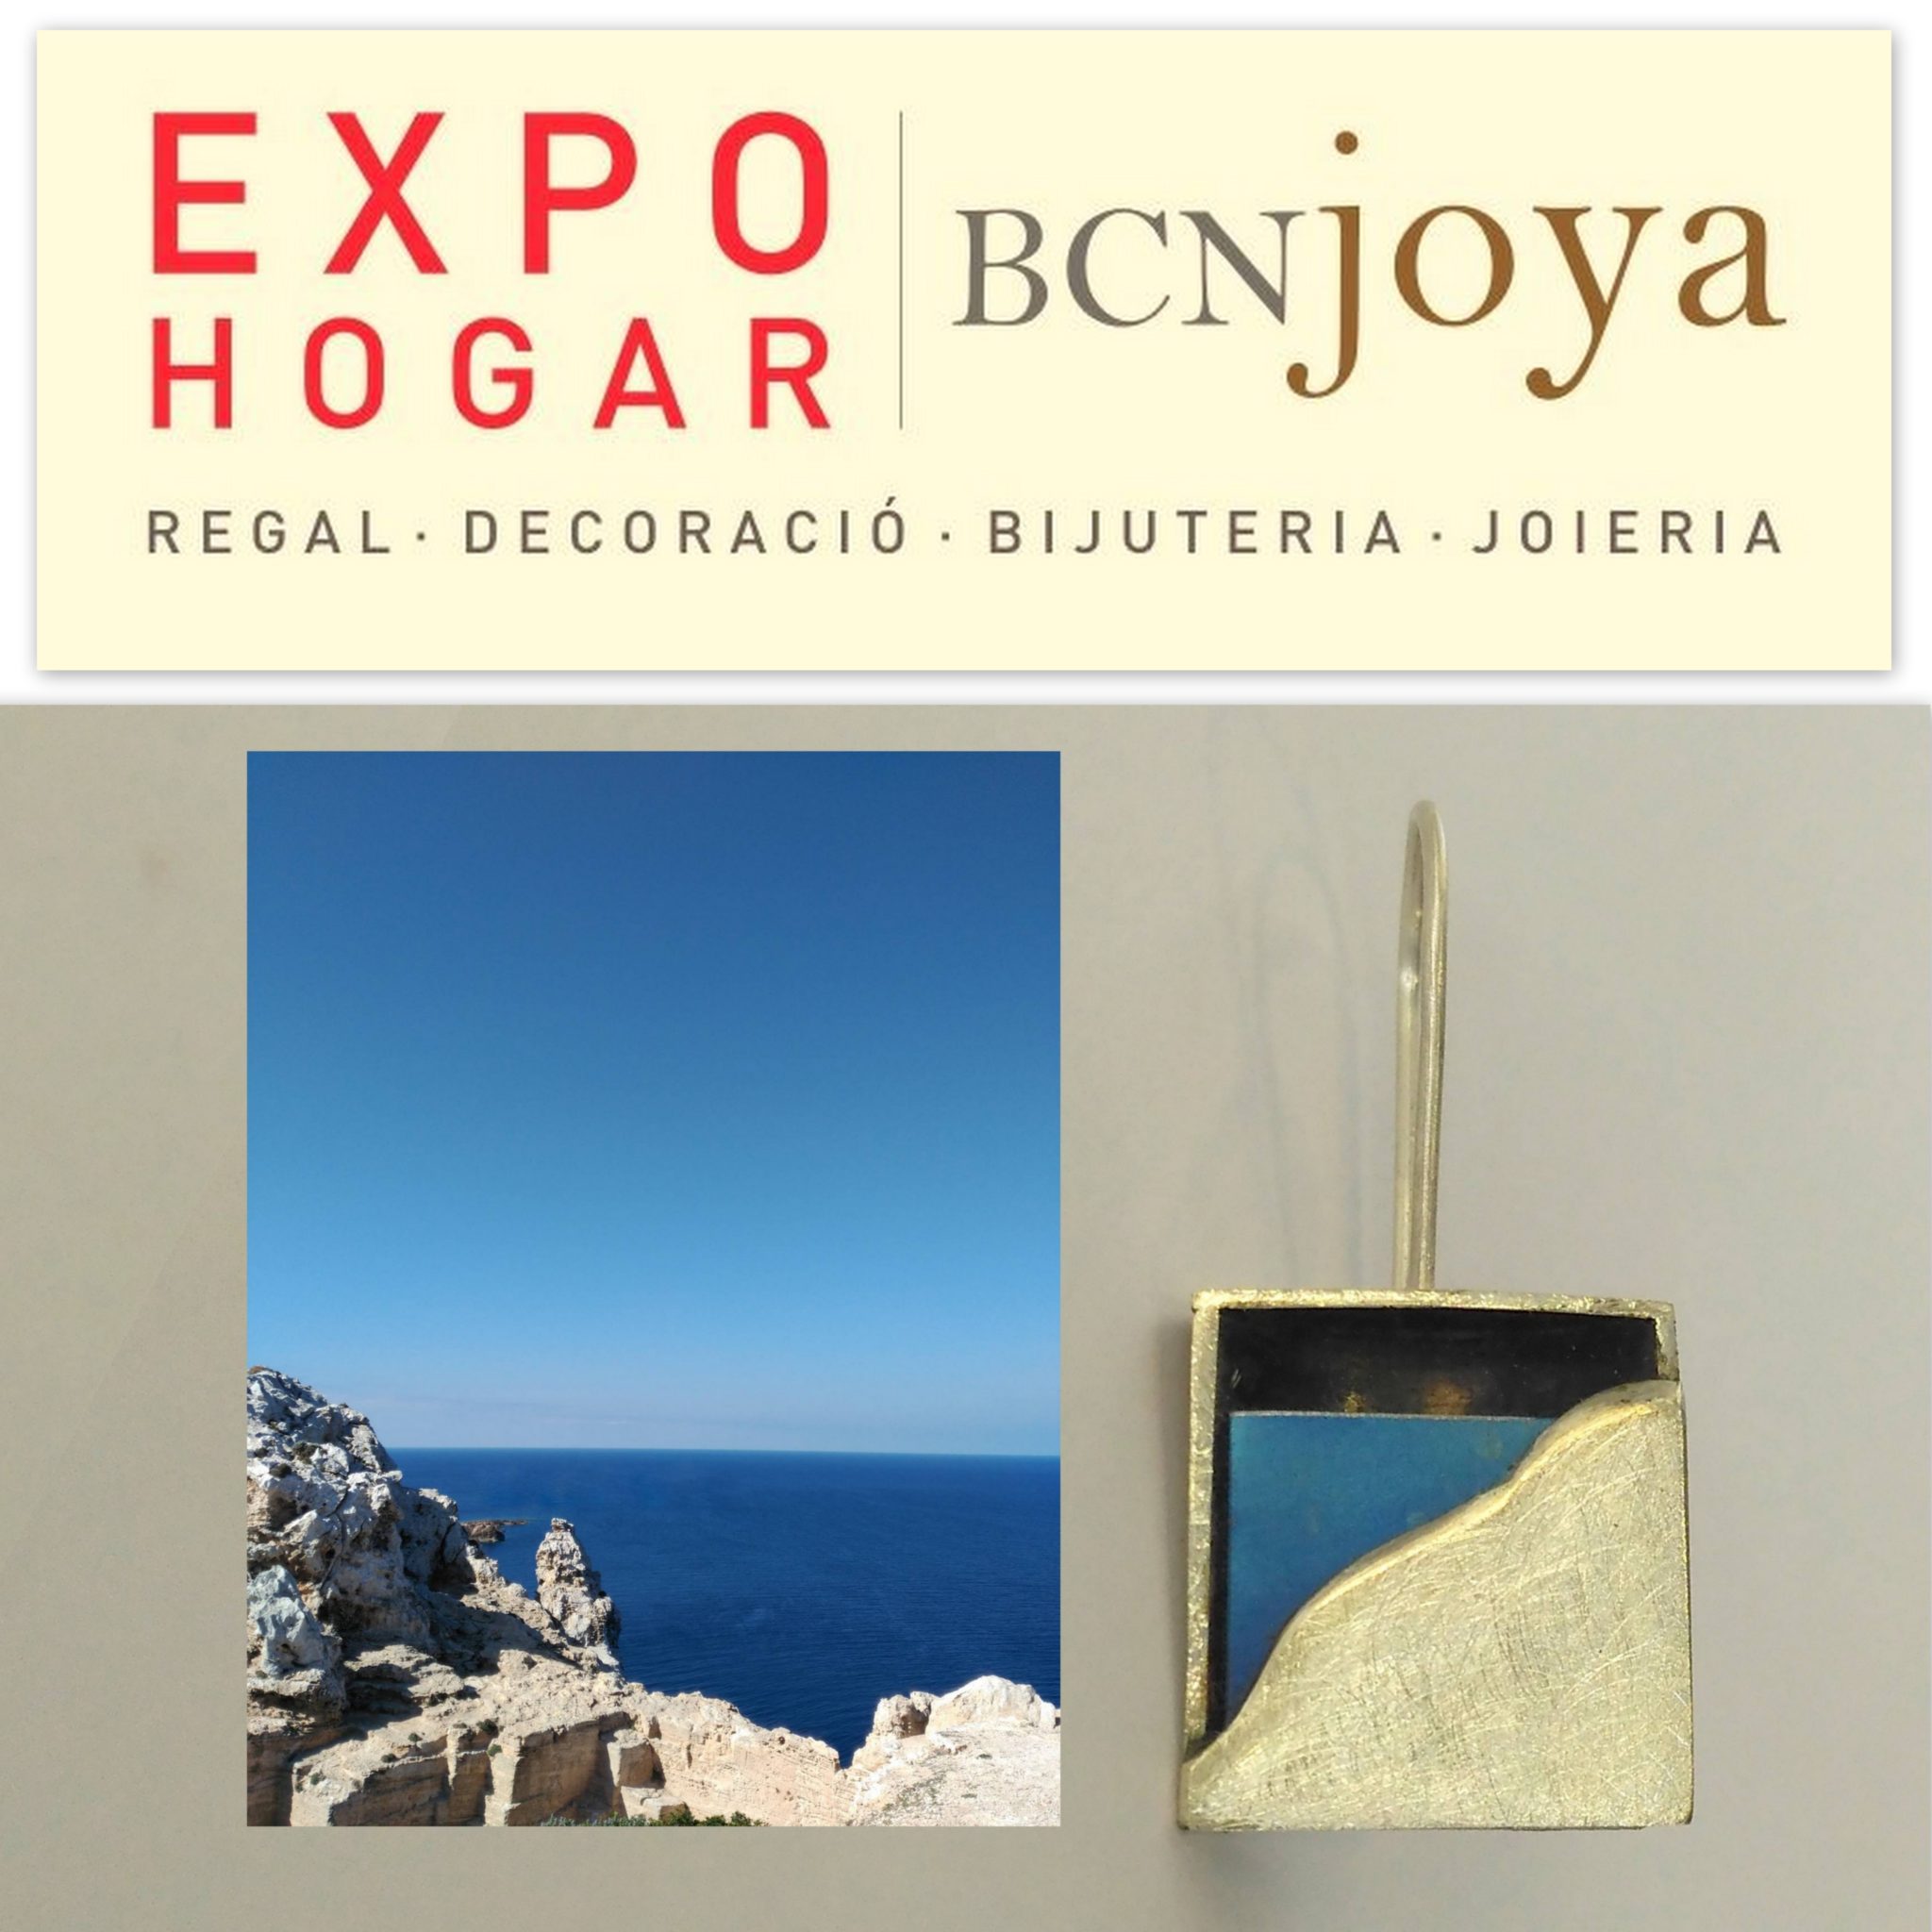 BCNjoya (Expohogar) 2018